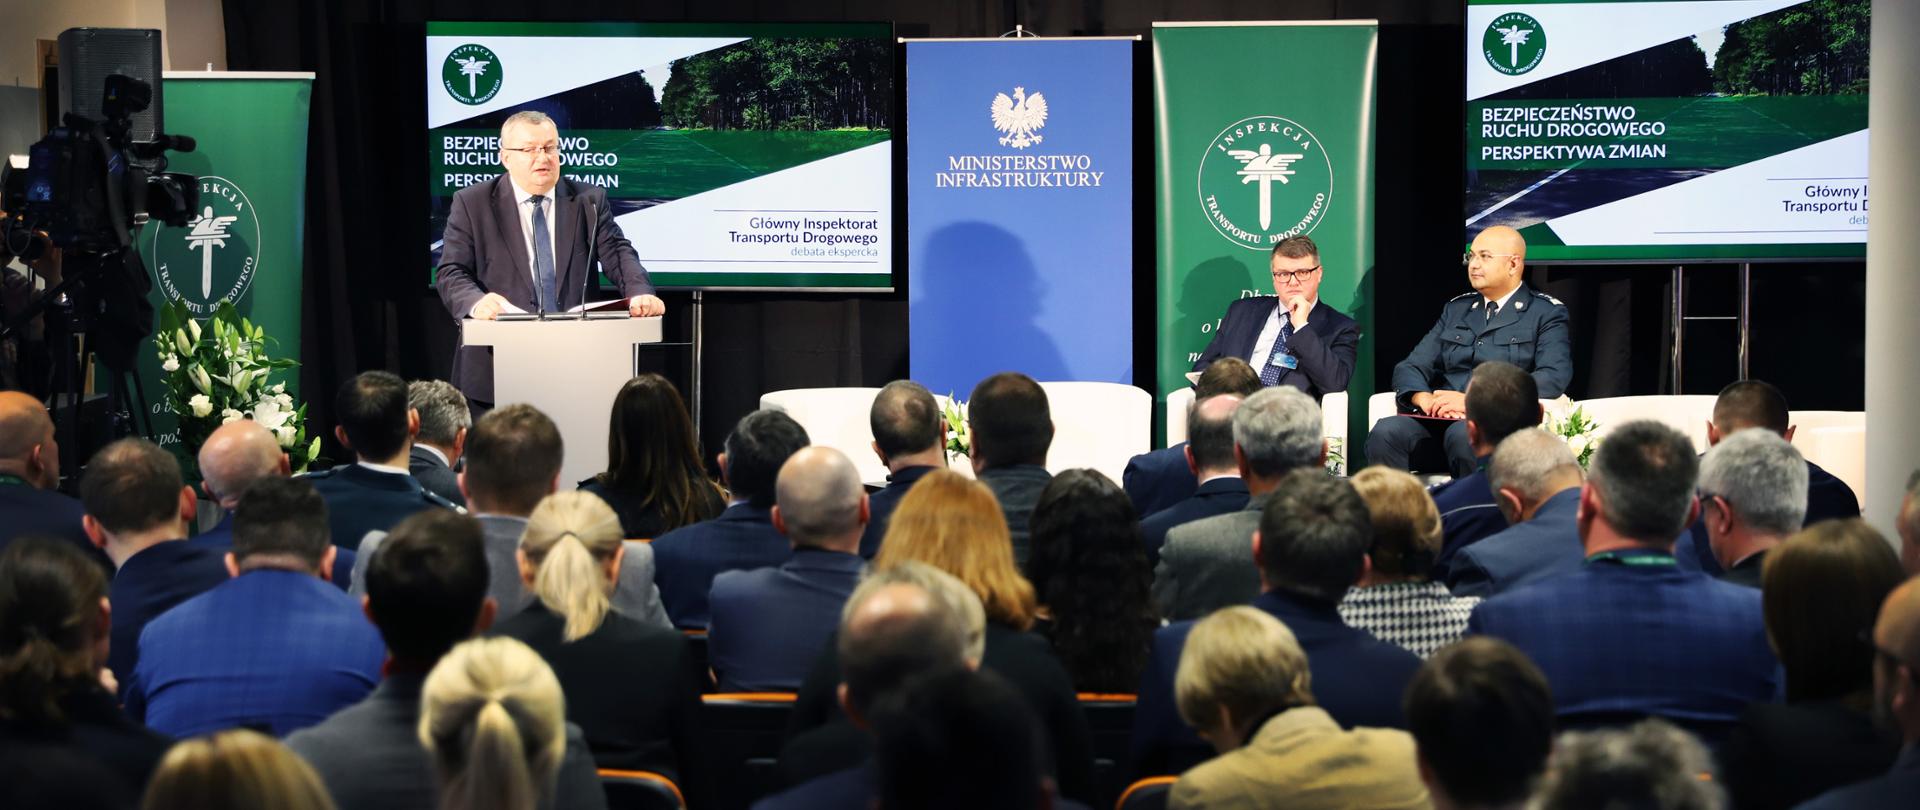 Minister Andrzej Adamczyk uczestniczy w debacie "Bezpieczeństwo Ruchu Drogowego - Perspektywa zmian"